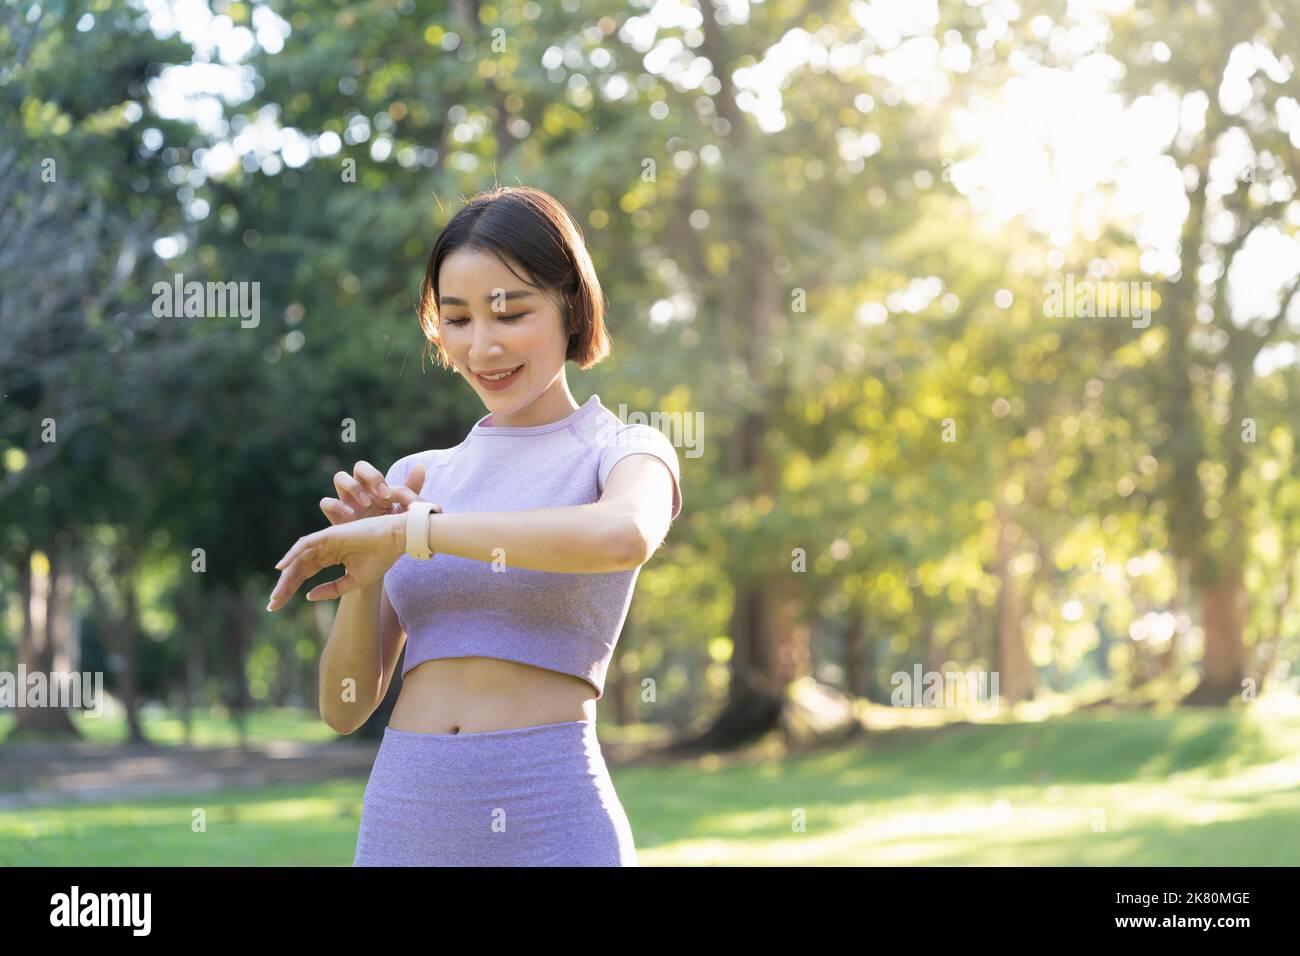 Giovane donna sportiva attiva che usa un orologio intelligente per monitorare i suoi progressi di allenamento dopo l'allenamento Foto Stock